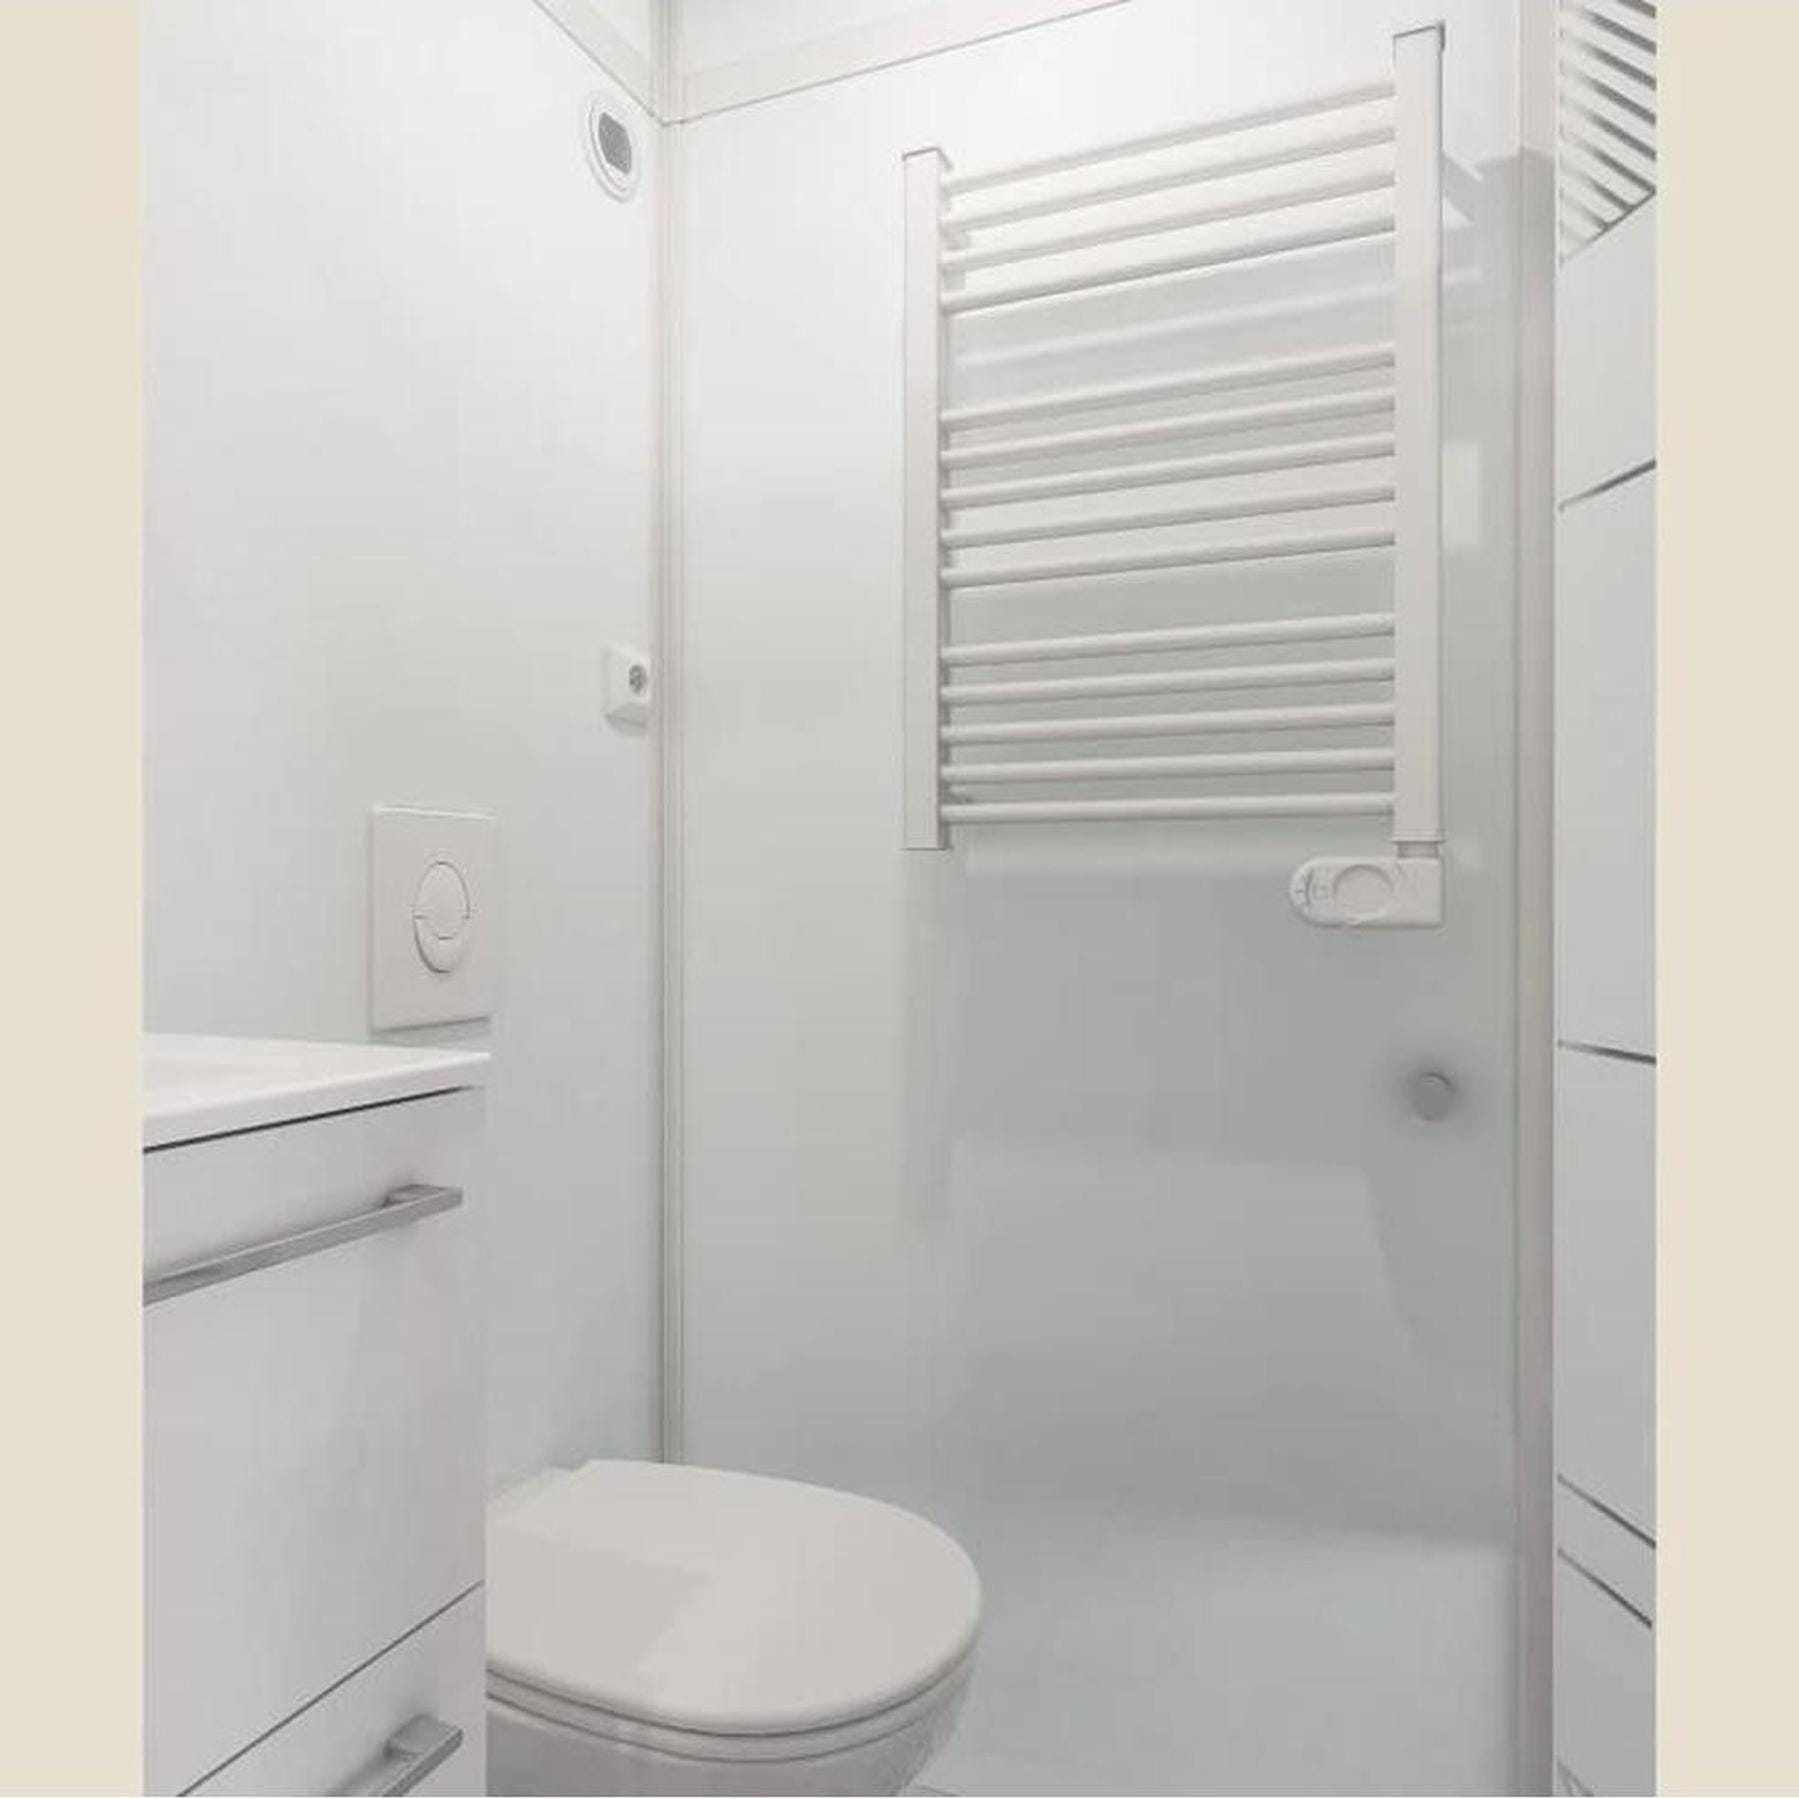 Salle de bain d'angle MODULO Luxe 200x100 VH douche à droite, meuble vasque, WC (avec broyeur) et sèche serviettes à gauche profilé blanc verre blanc 2